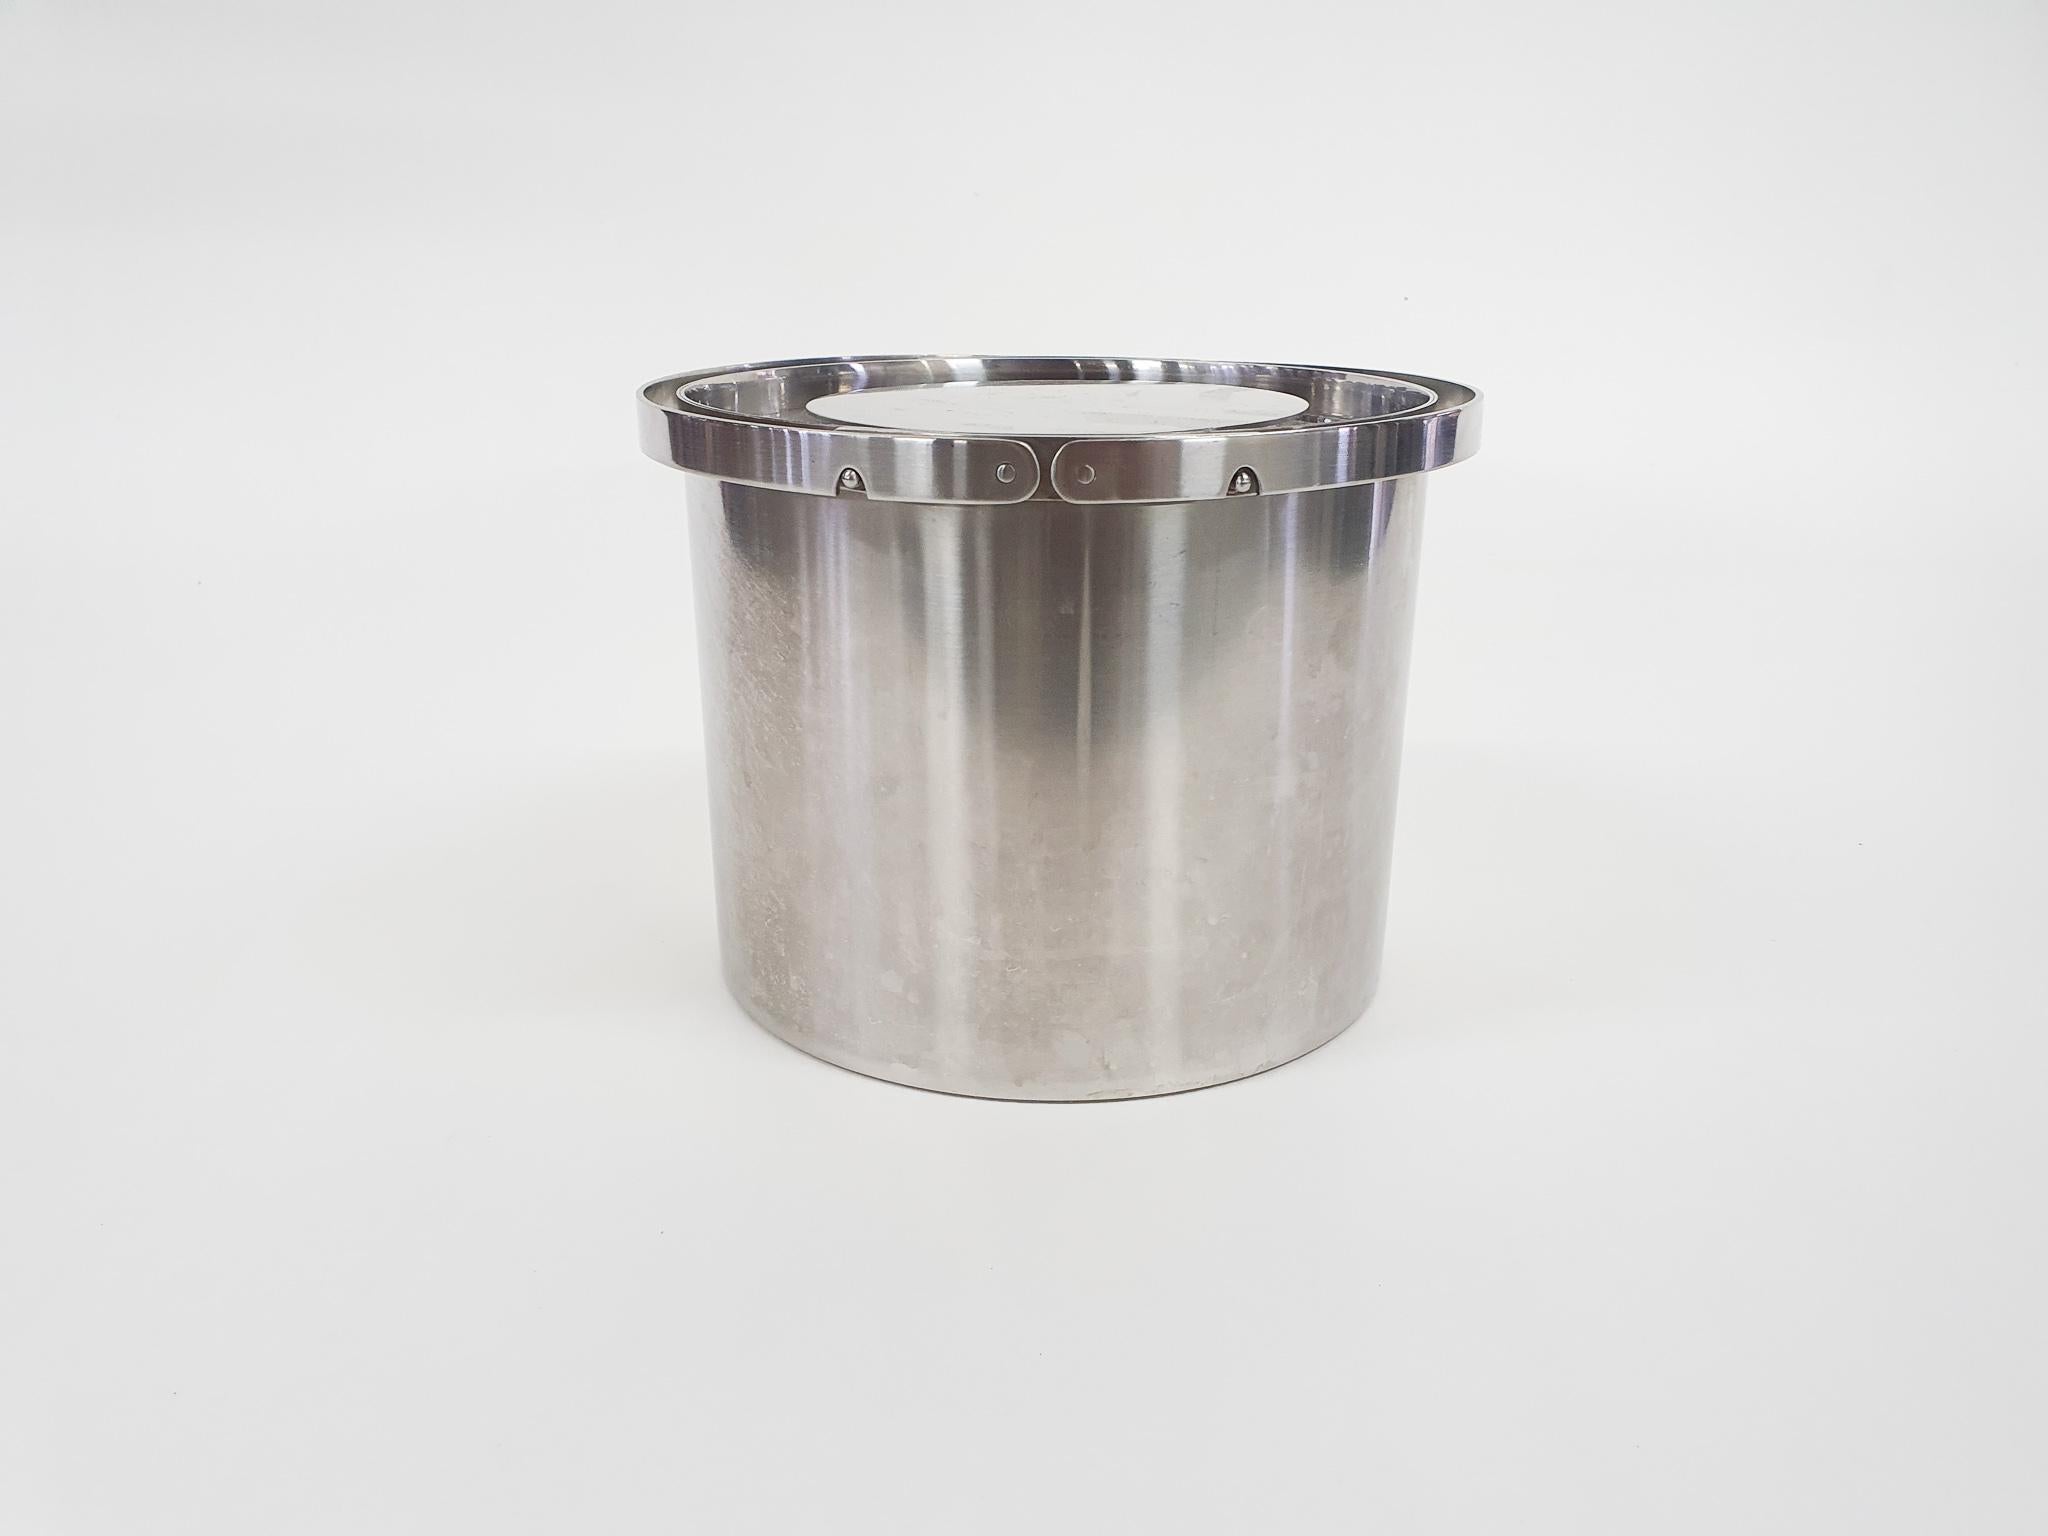 Danish Stainless Steel Ice Bucket by Arne Jacobsen for Stelton, Denmark, 1960's For Sale